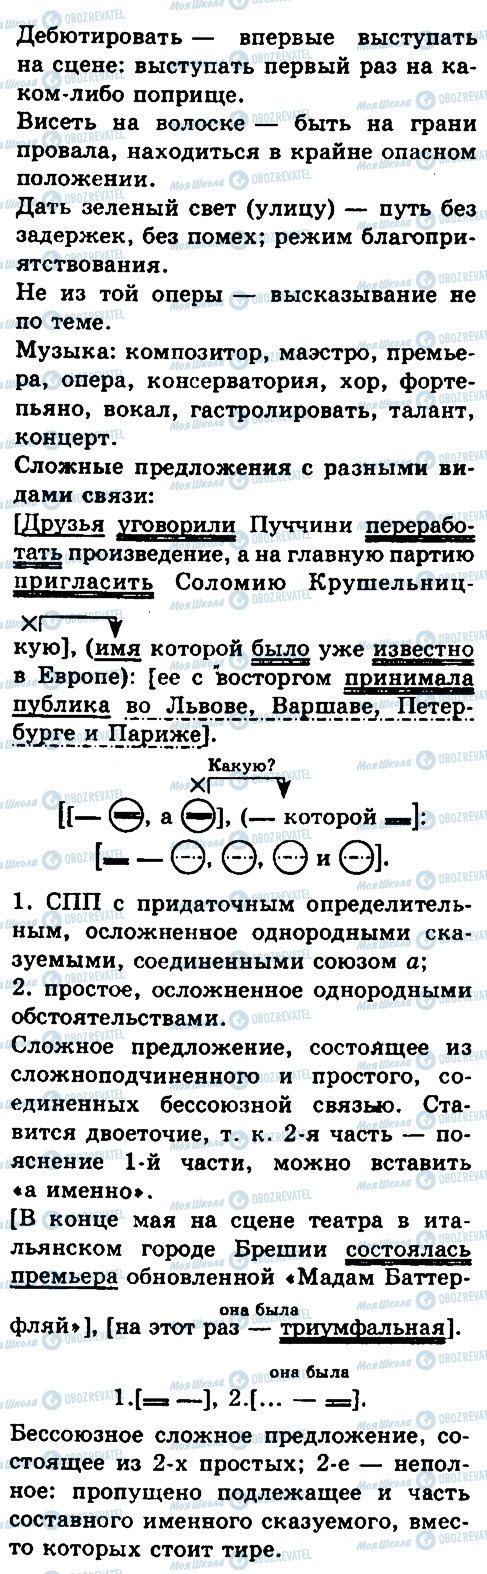 ГДЗ Русский язык 10 класс страница 116